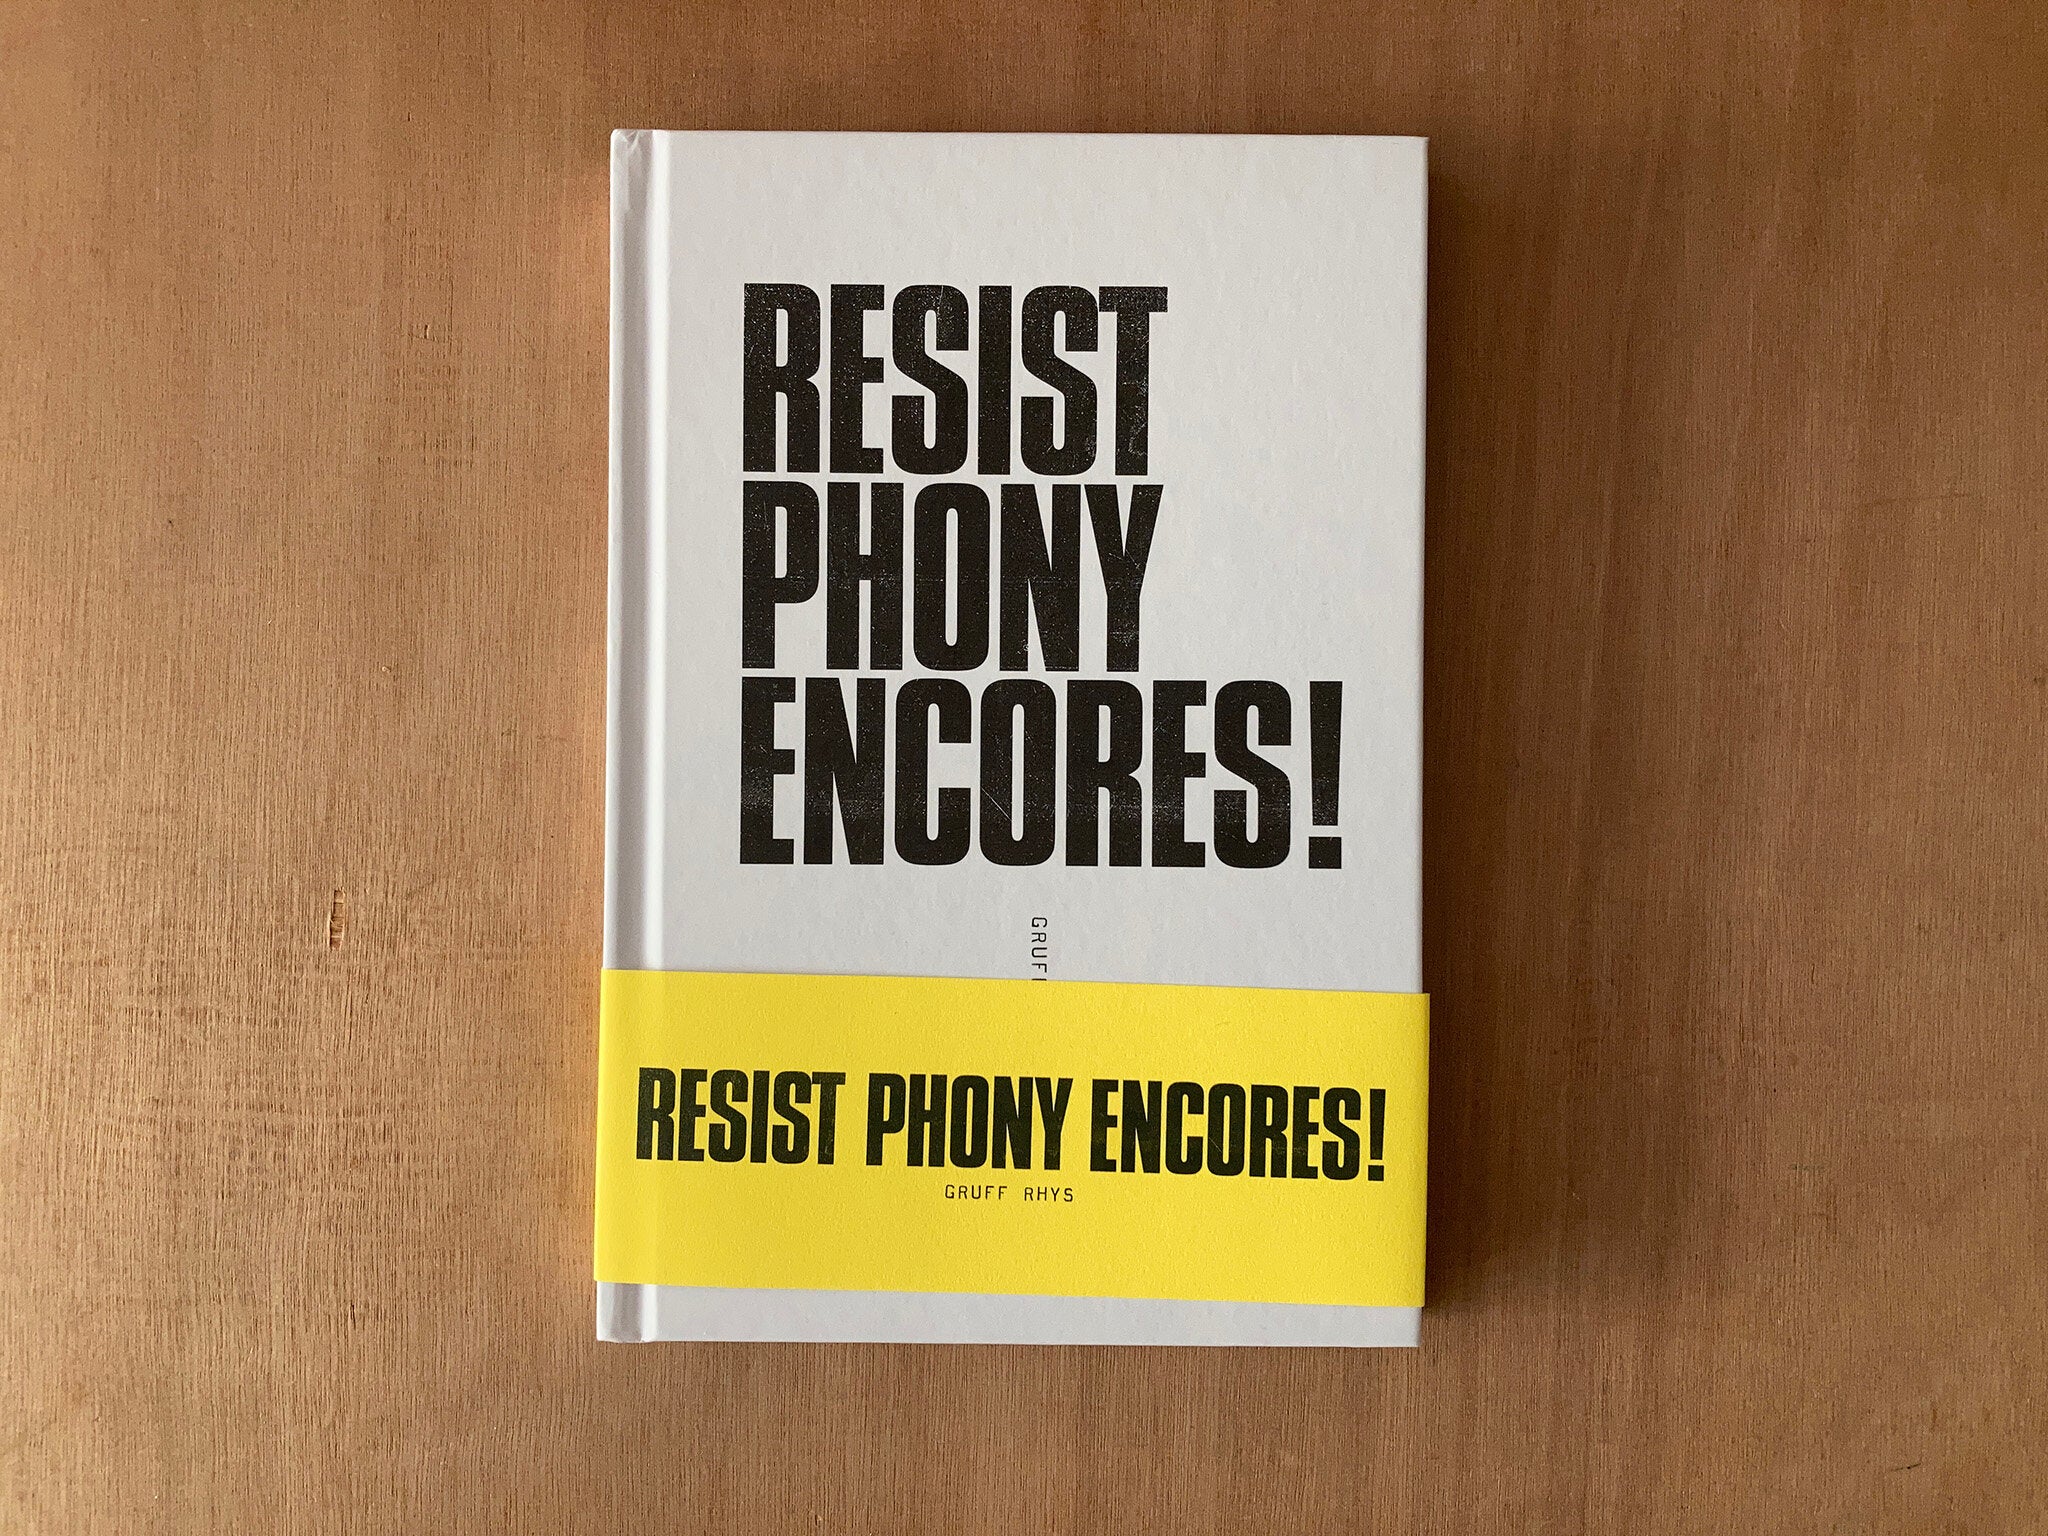 RESIST PHONY ENCORES! by Gruff Rhys